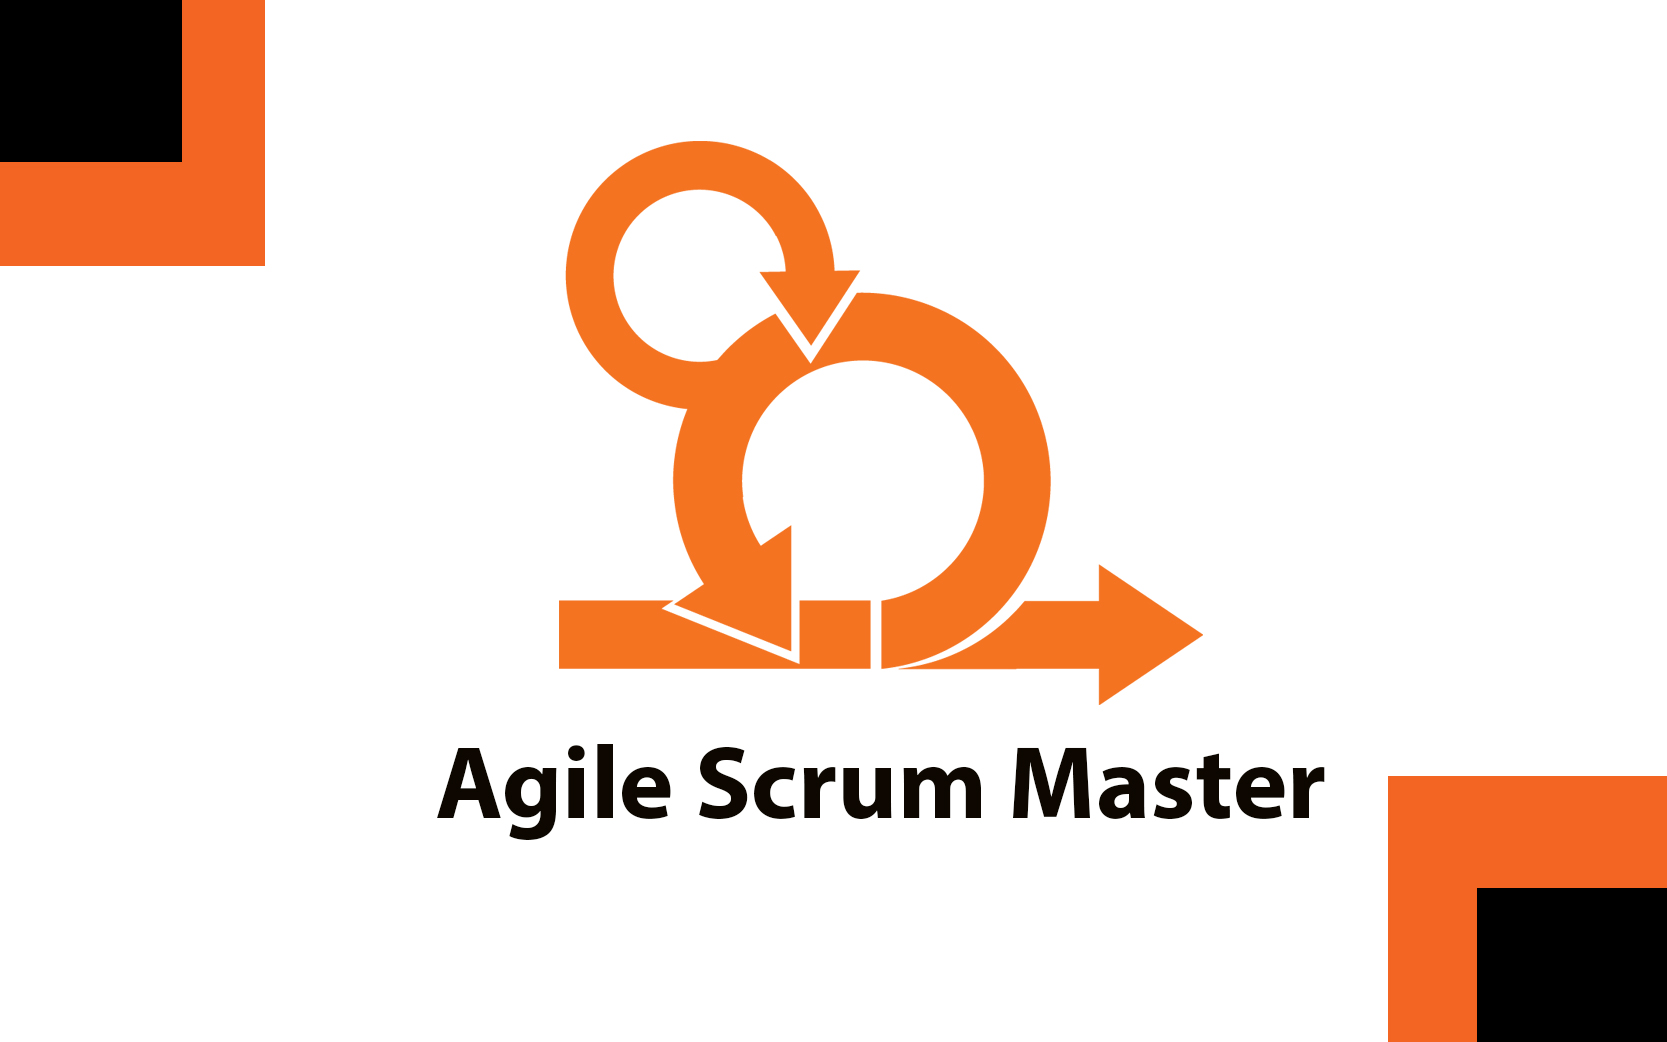 Agile Scrum Master